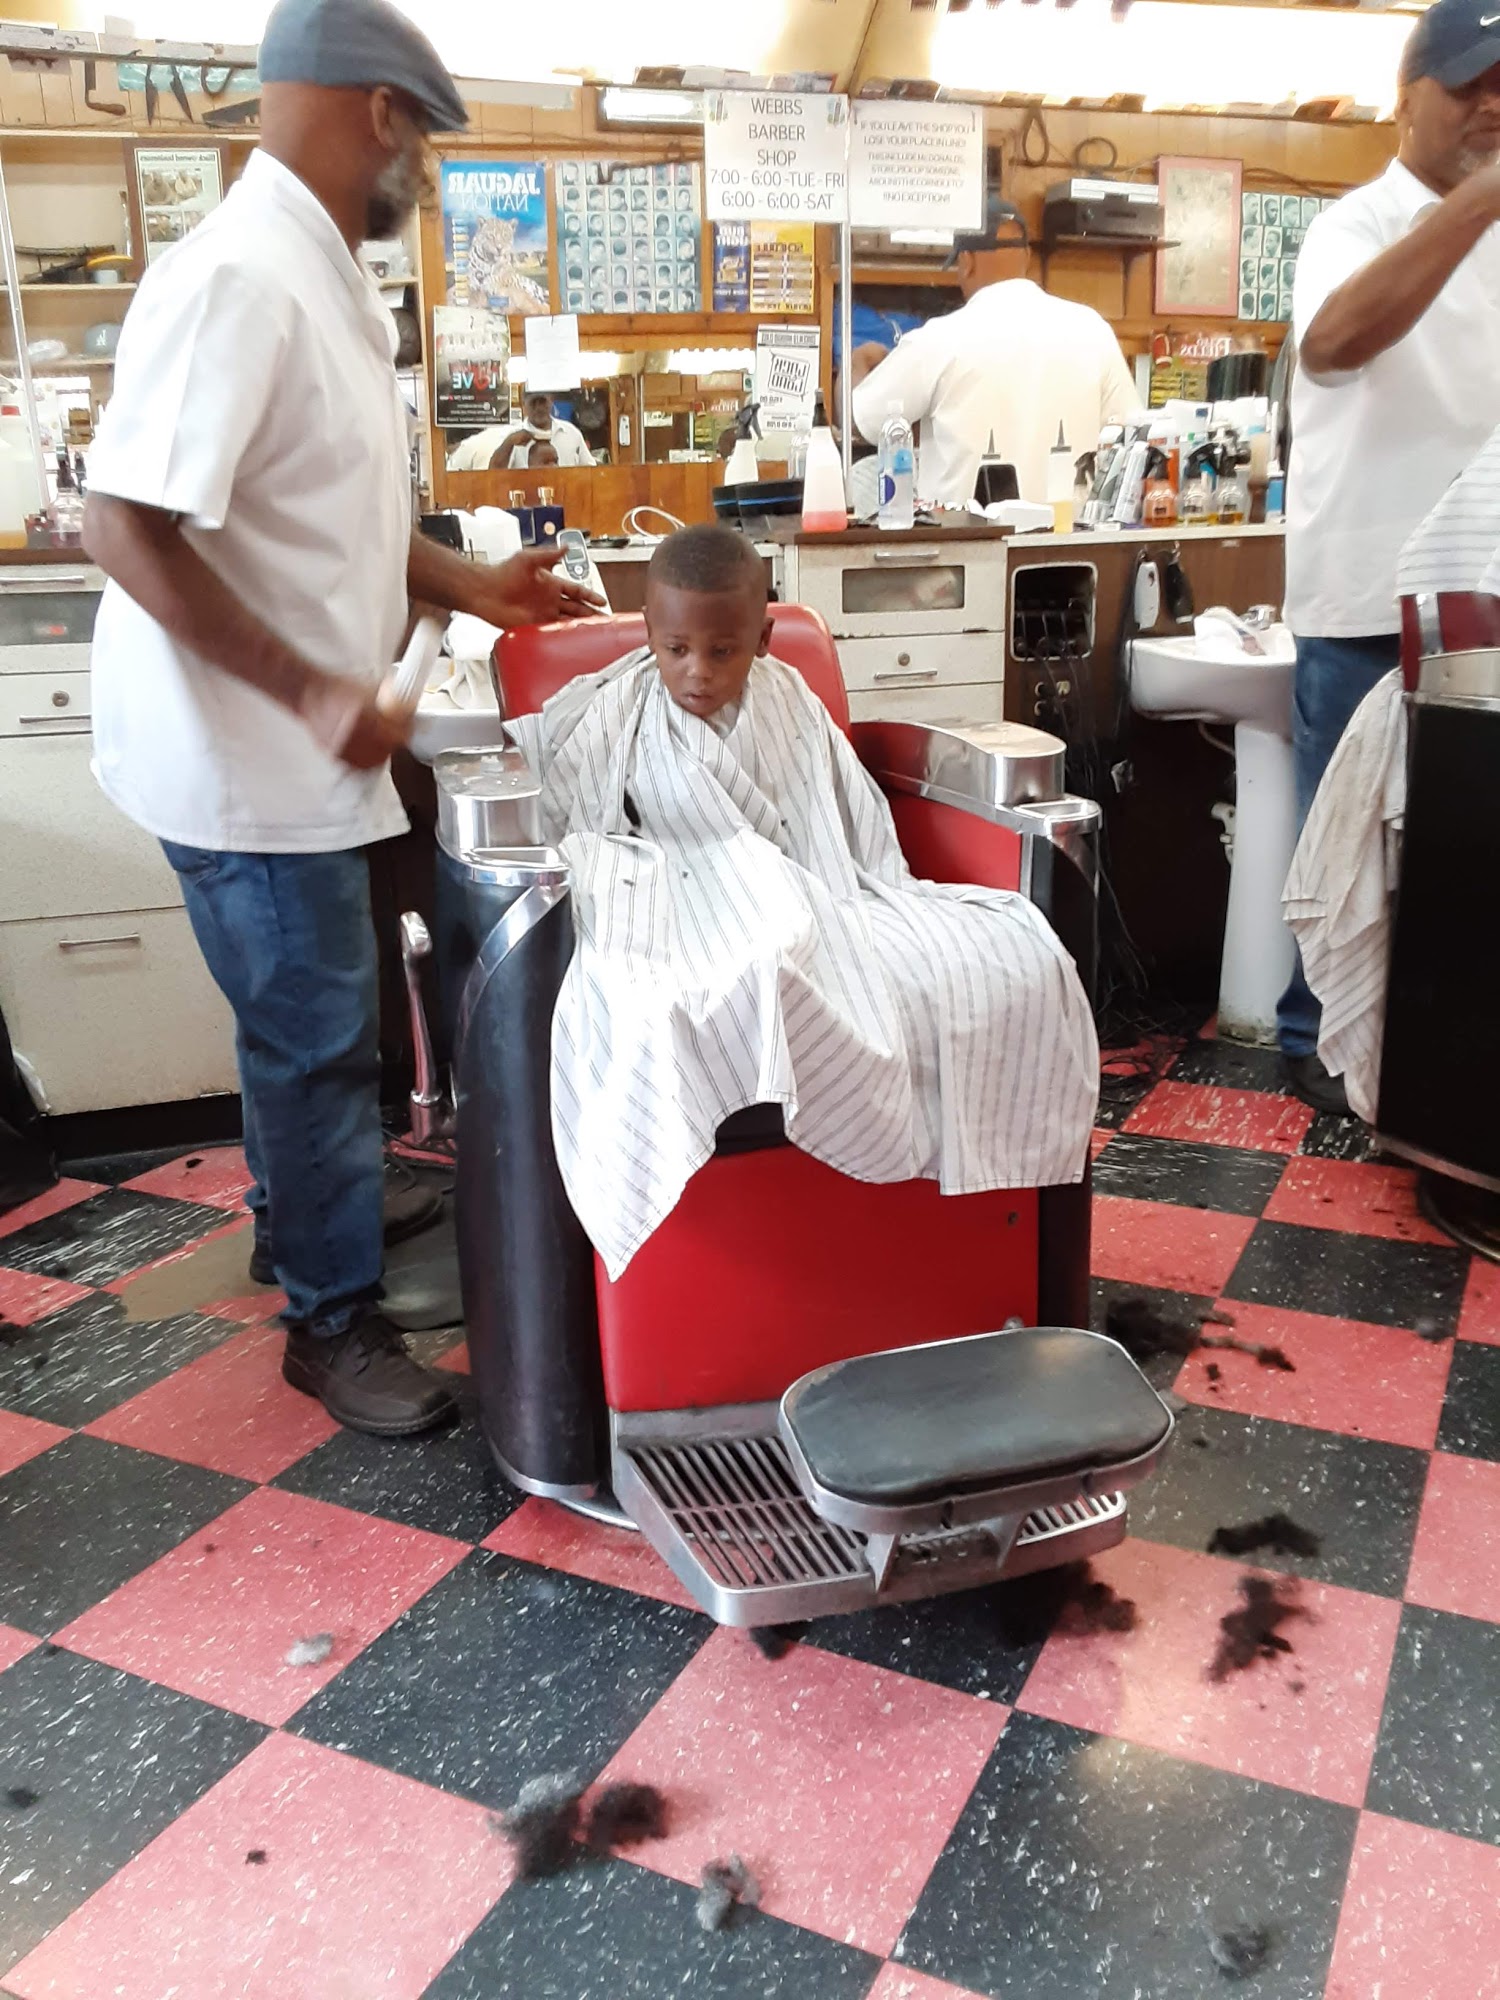 Webb's Barber Shop